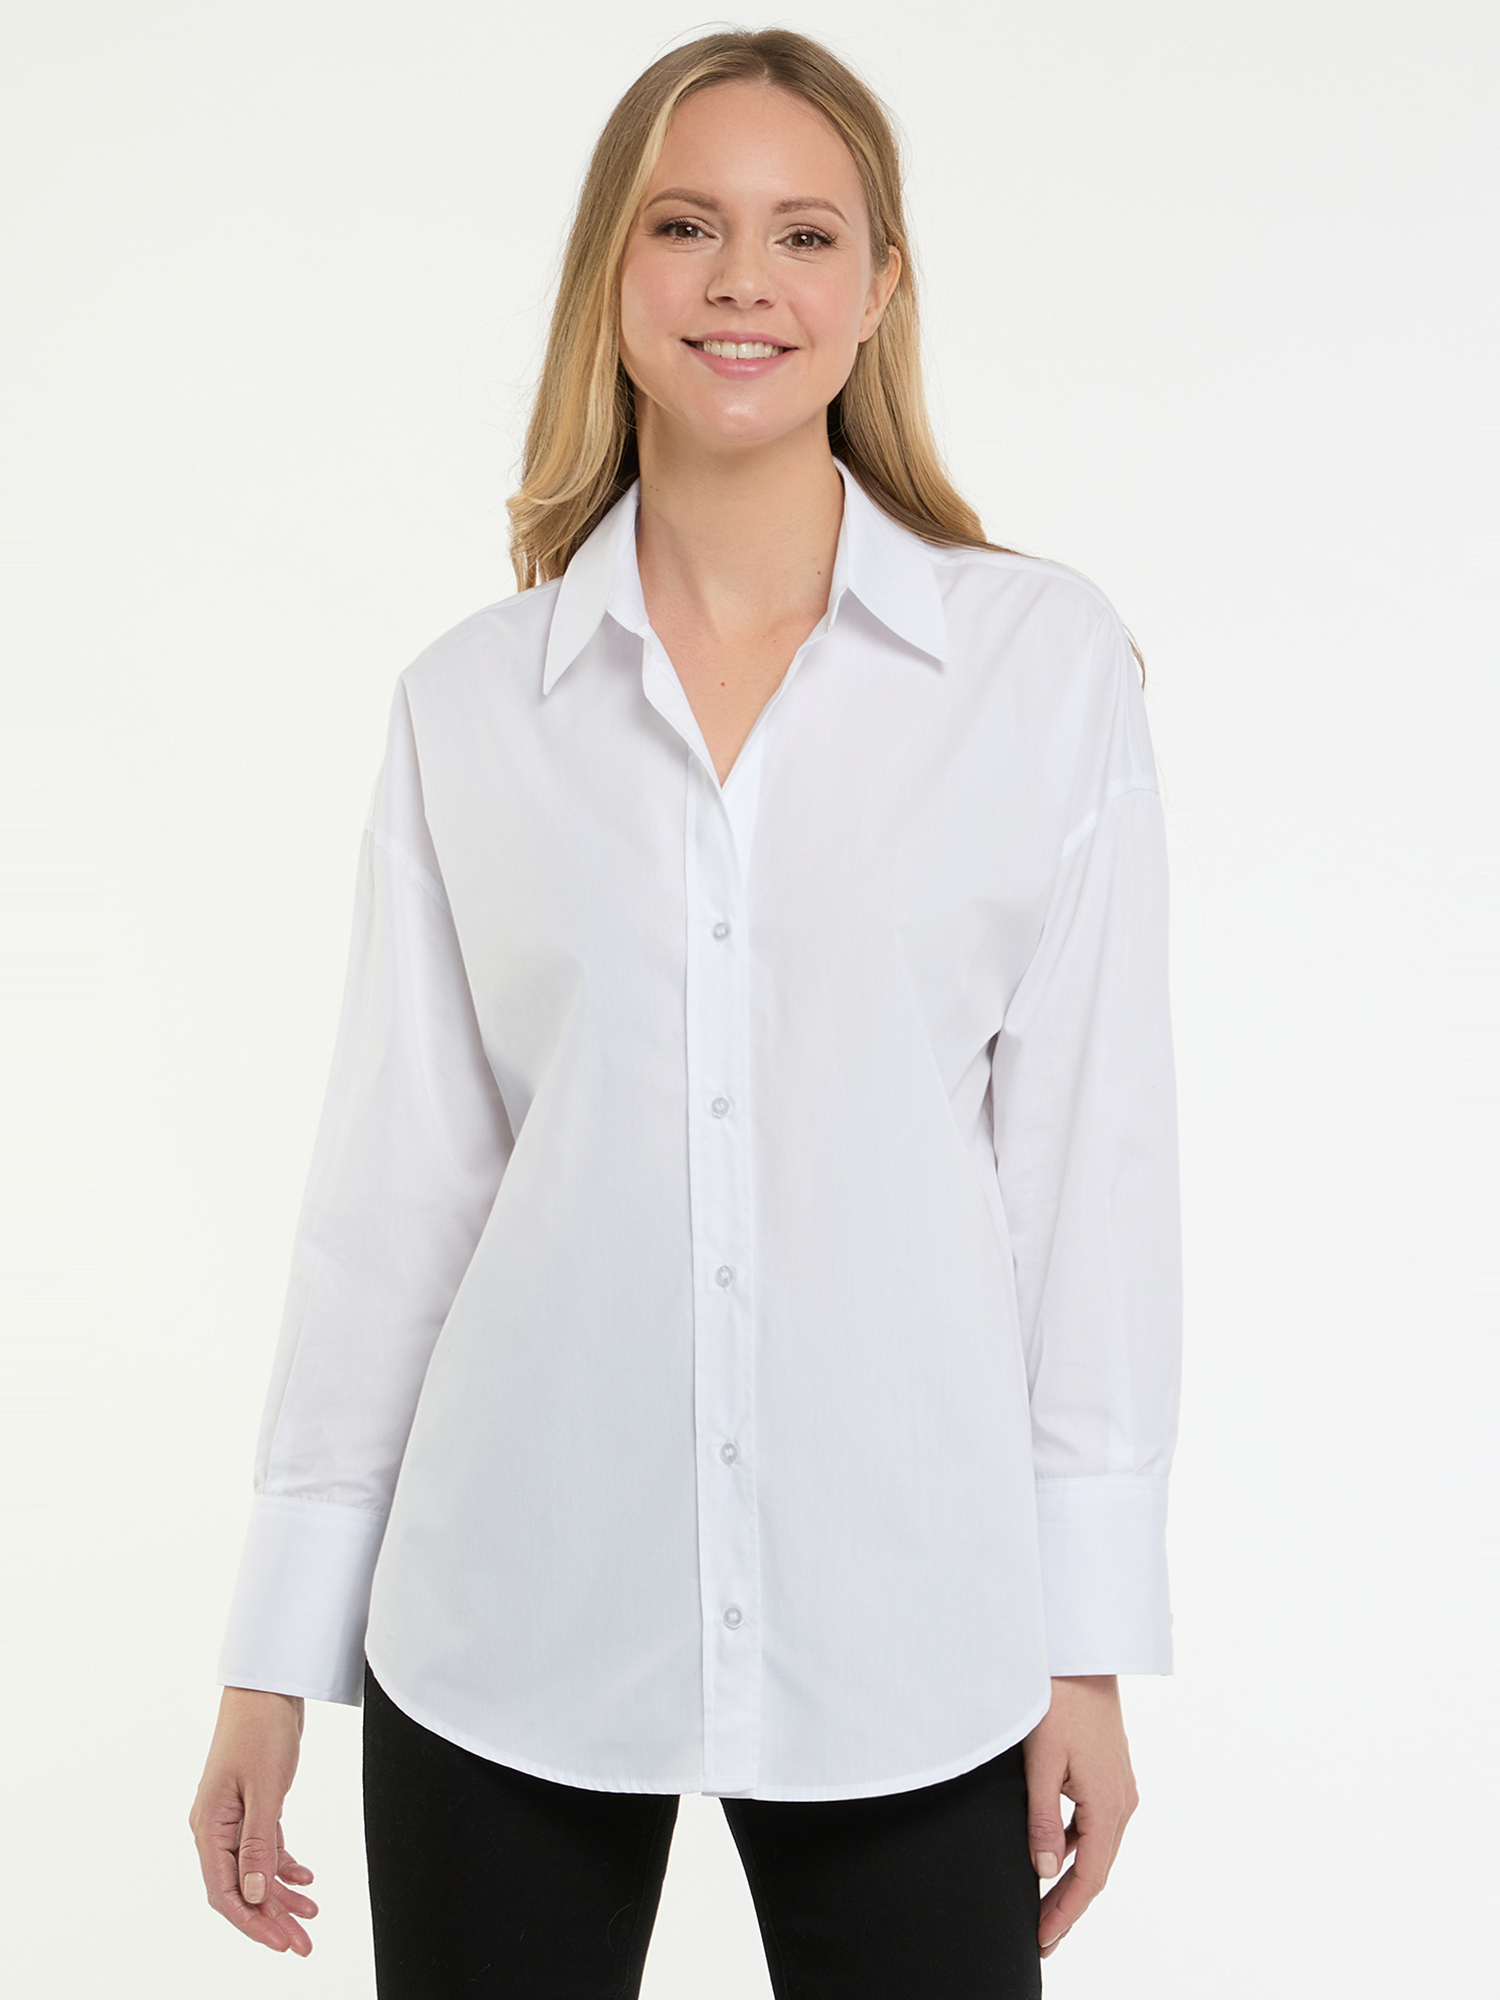 Рубашка женская oodji 13K11035-1 белая 36 EU